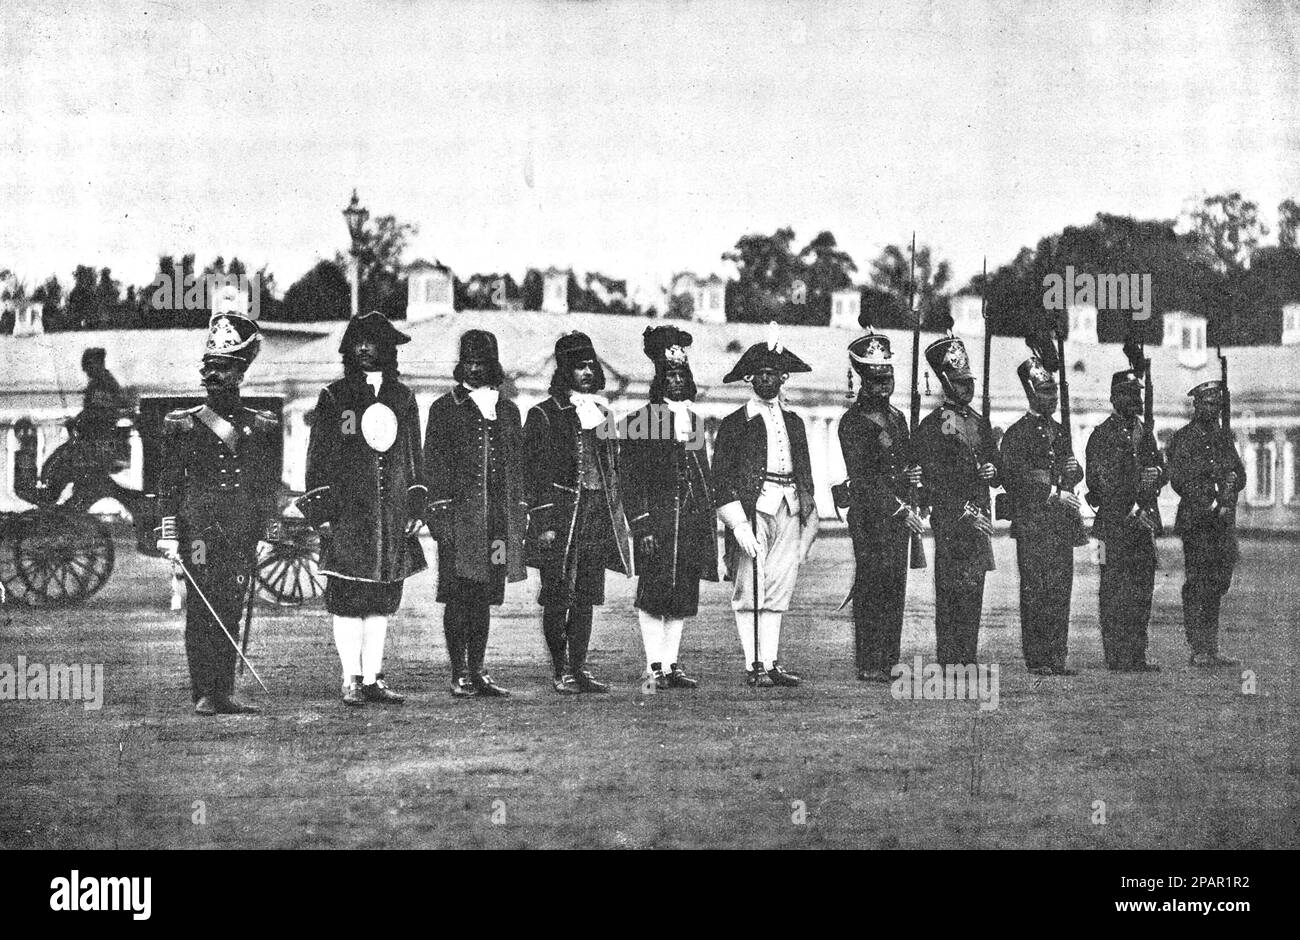 Mitglieder der russischen Wachmannschaft in historischen Kostümen anlässlich des 200. Jahrestages ihrer Existenz. Foto von 1910. Stockfoto